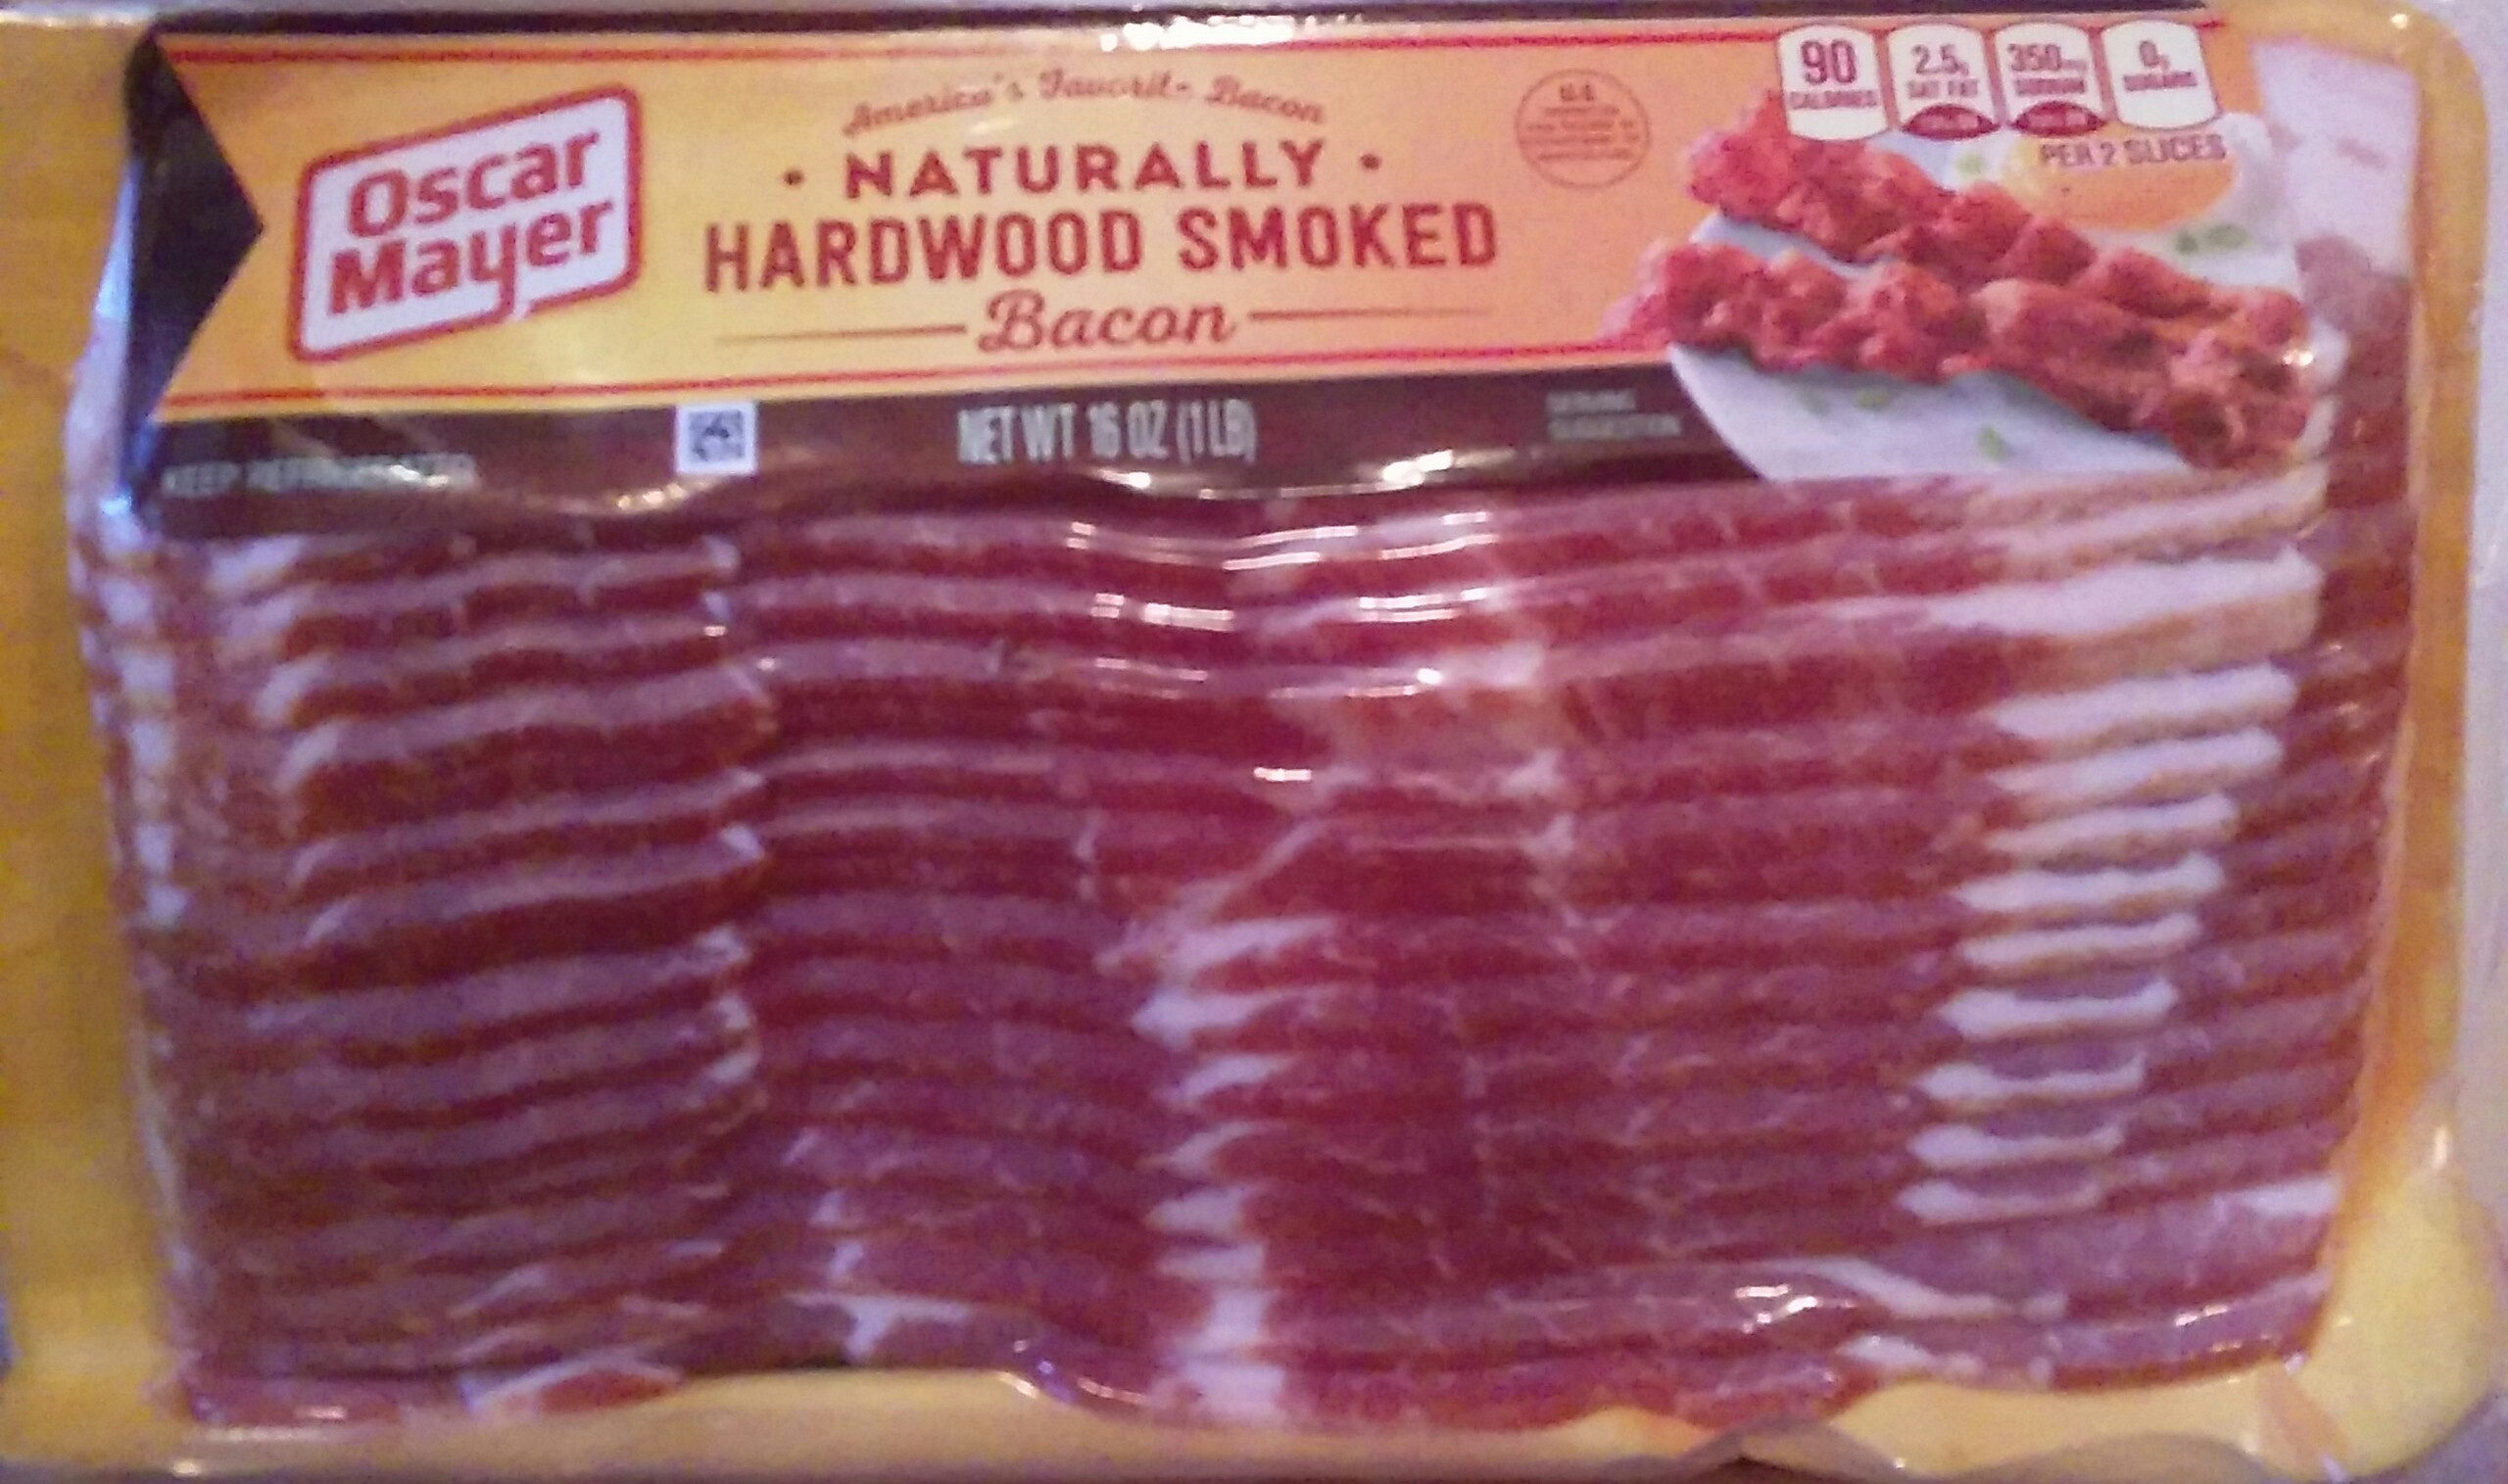 Naturally hardwood smoked bacon, hardwood smoked - Product - en